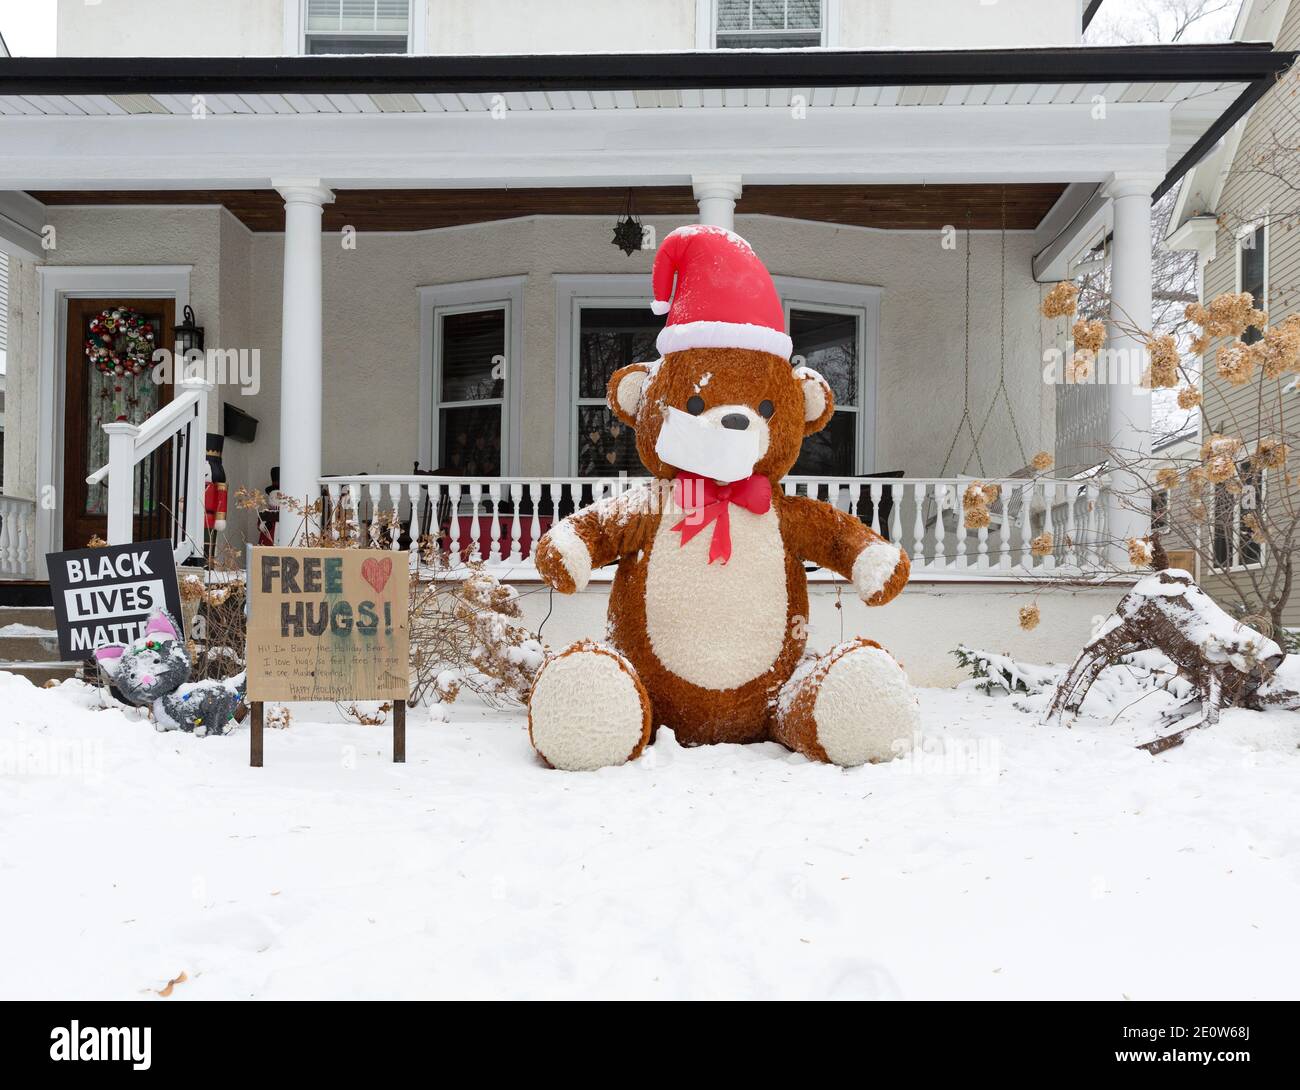 Une exposition de cour de Noël avec une grande publicité d'ours en peluche Des hugs libres pendant la pandémie Covid-19 de 2020 Banque D'Images